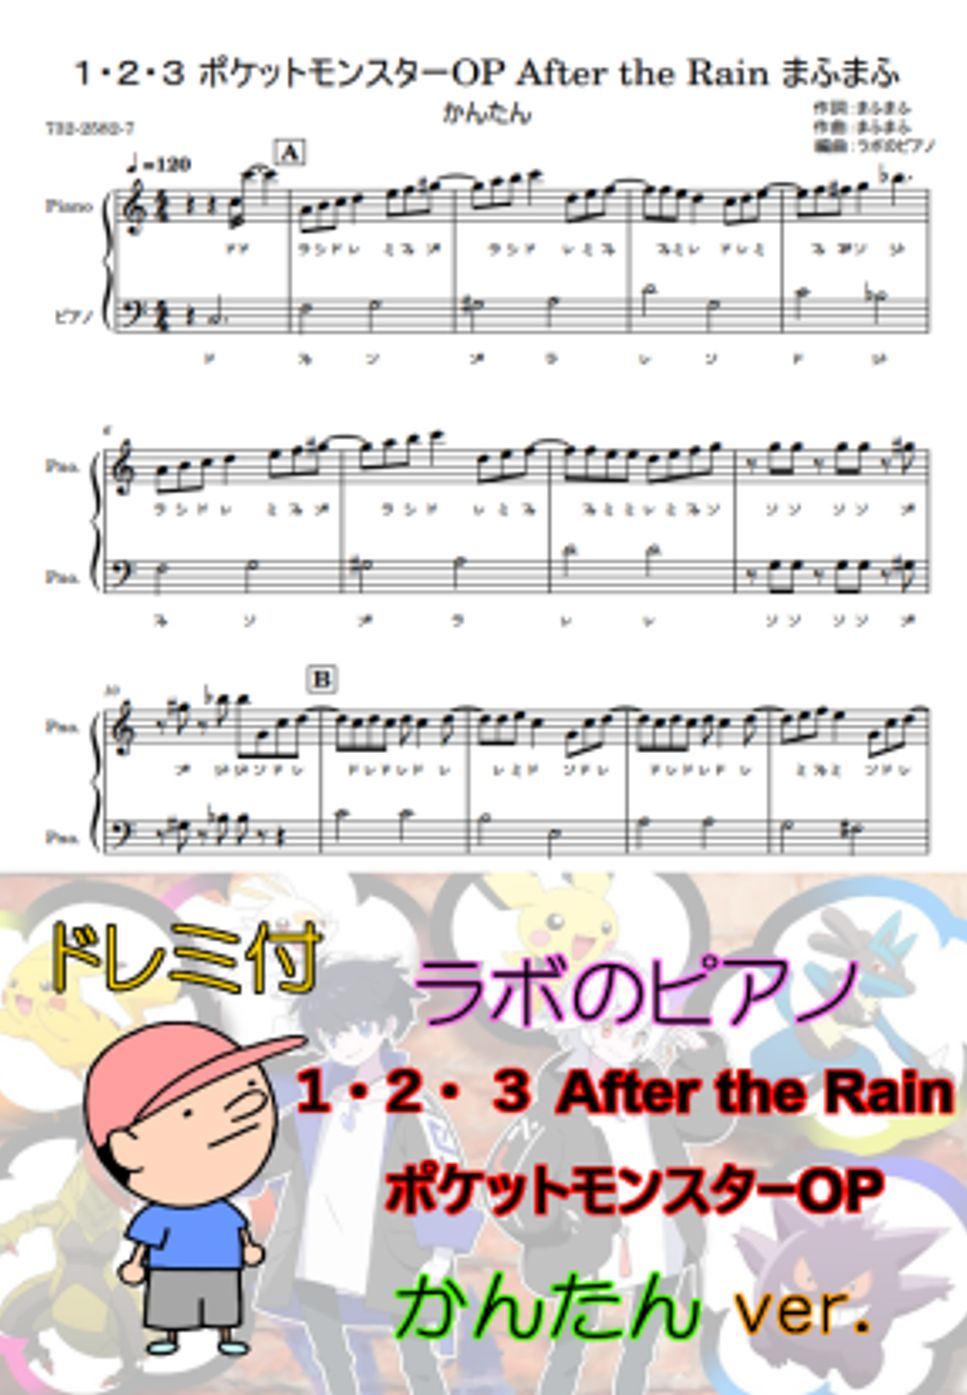 まふまふ - １・２・３ ポケットモンスターOP After the Rainドレミ付 かんたんver. by ラボのピアノ